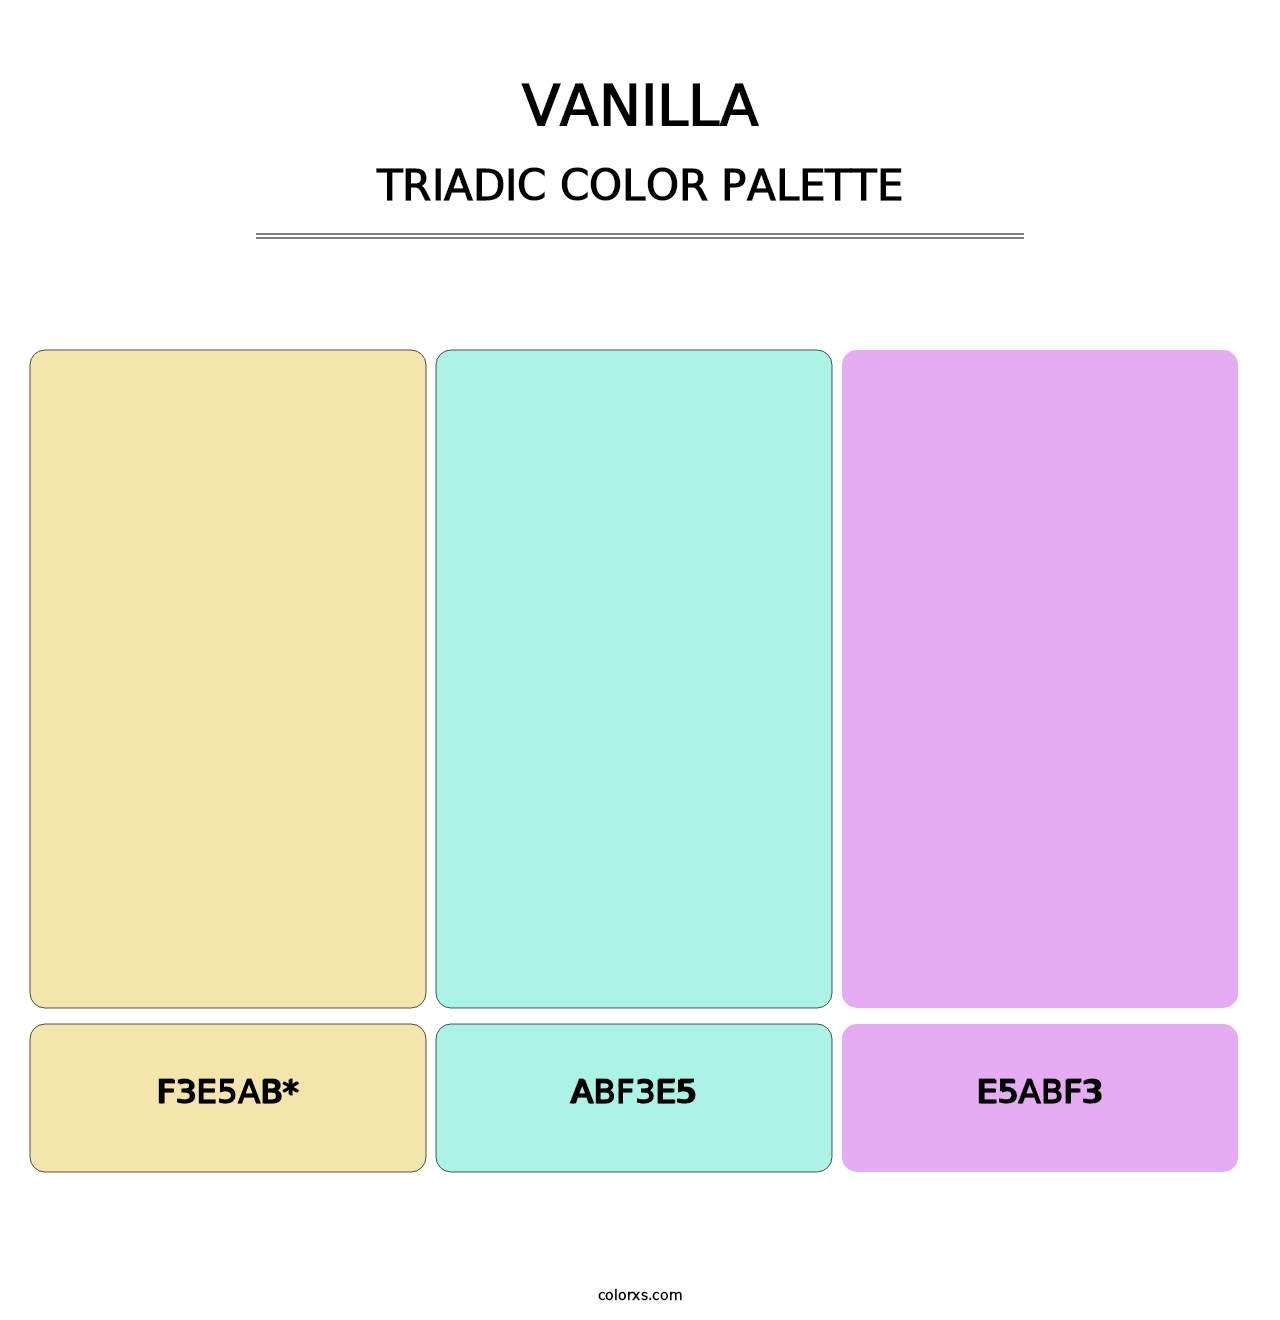 Vanilla - Triadic Color Palette